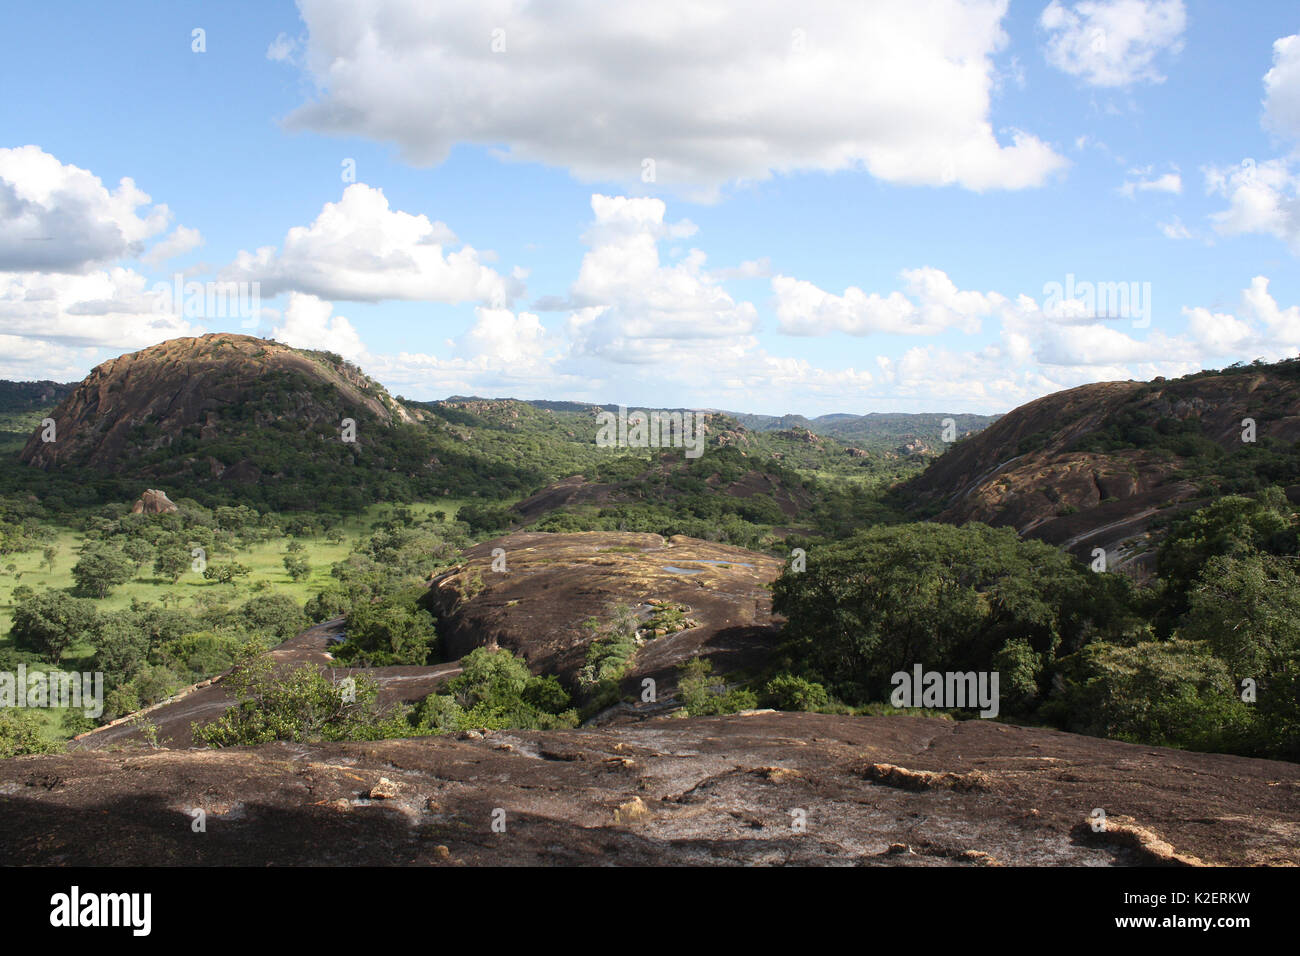 Landscape at World view, Mtopo hills, Zimbabwe. January 2011. Stock Photo